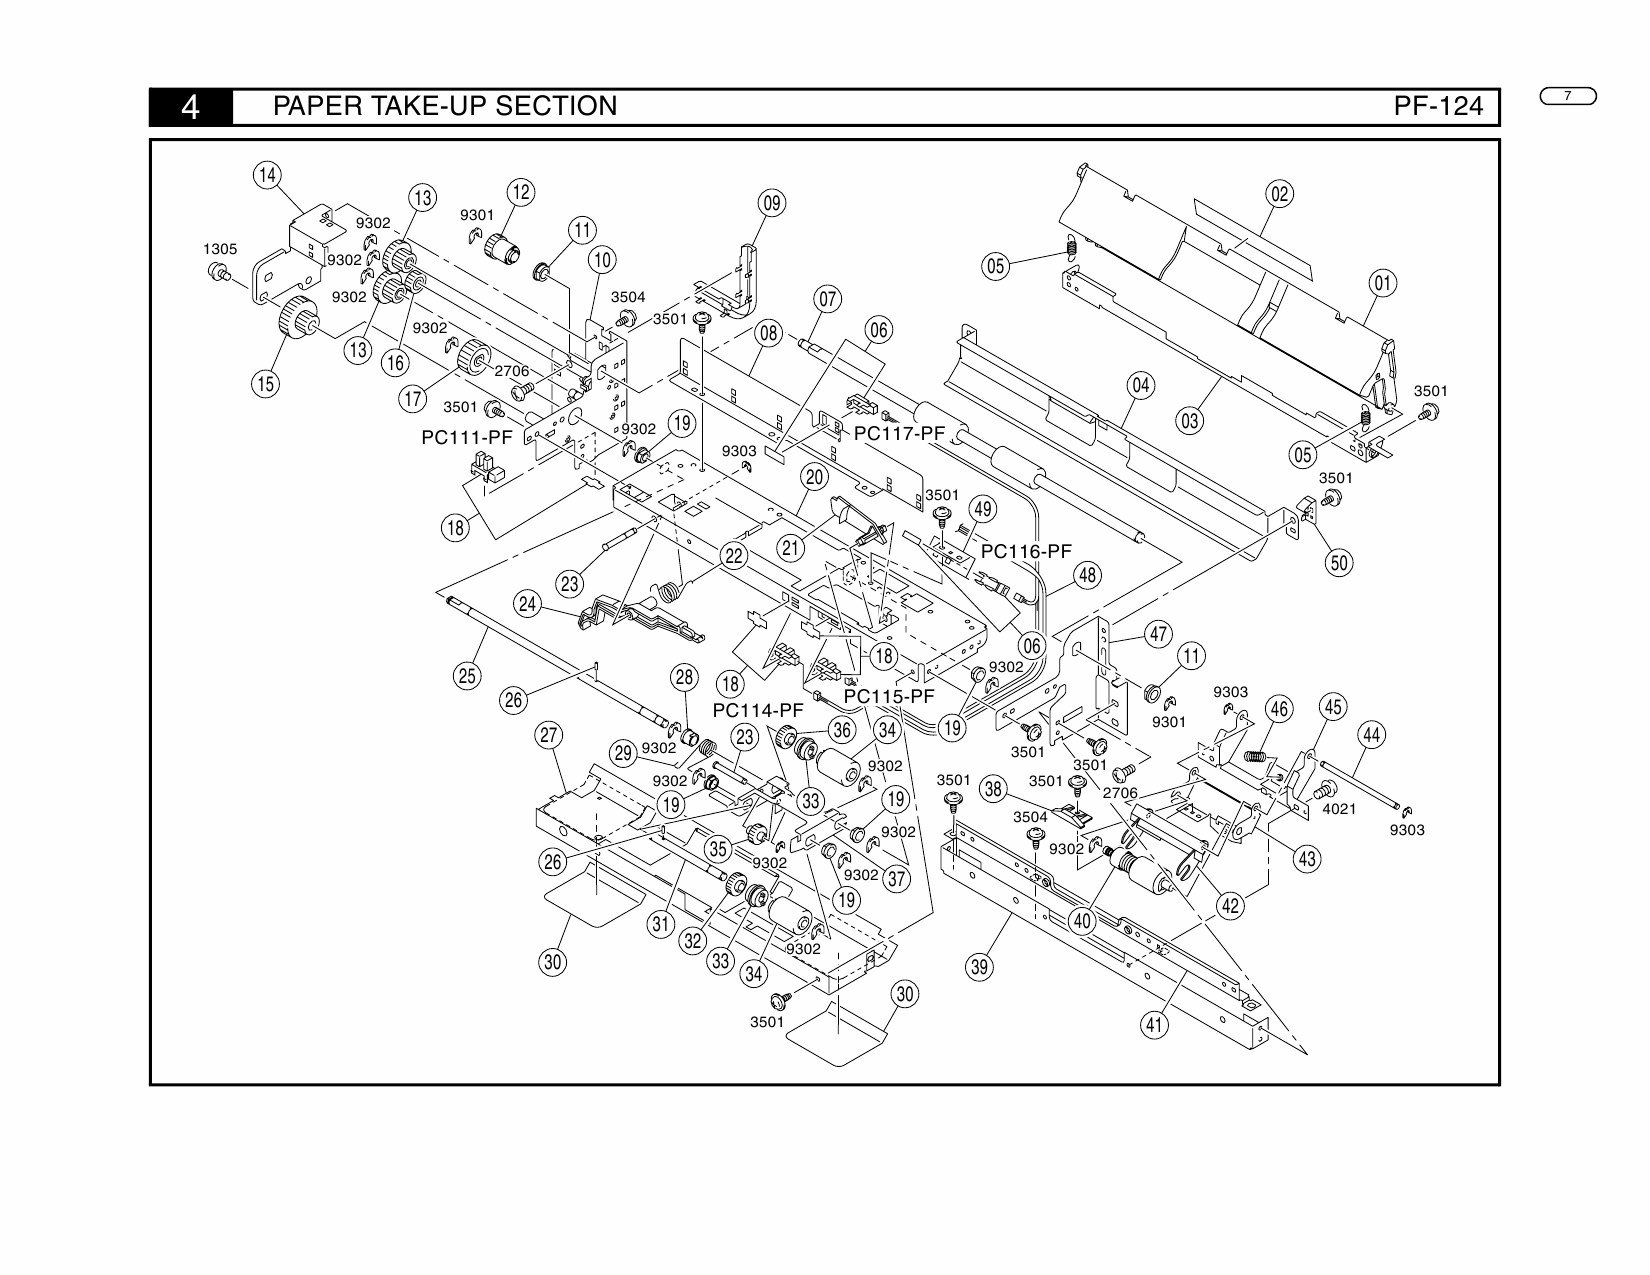 Konica-Minolta Options PF-124 Parts Manual-5